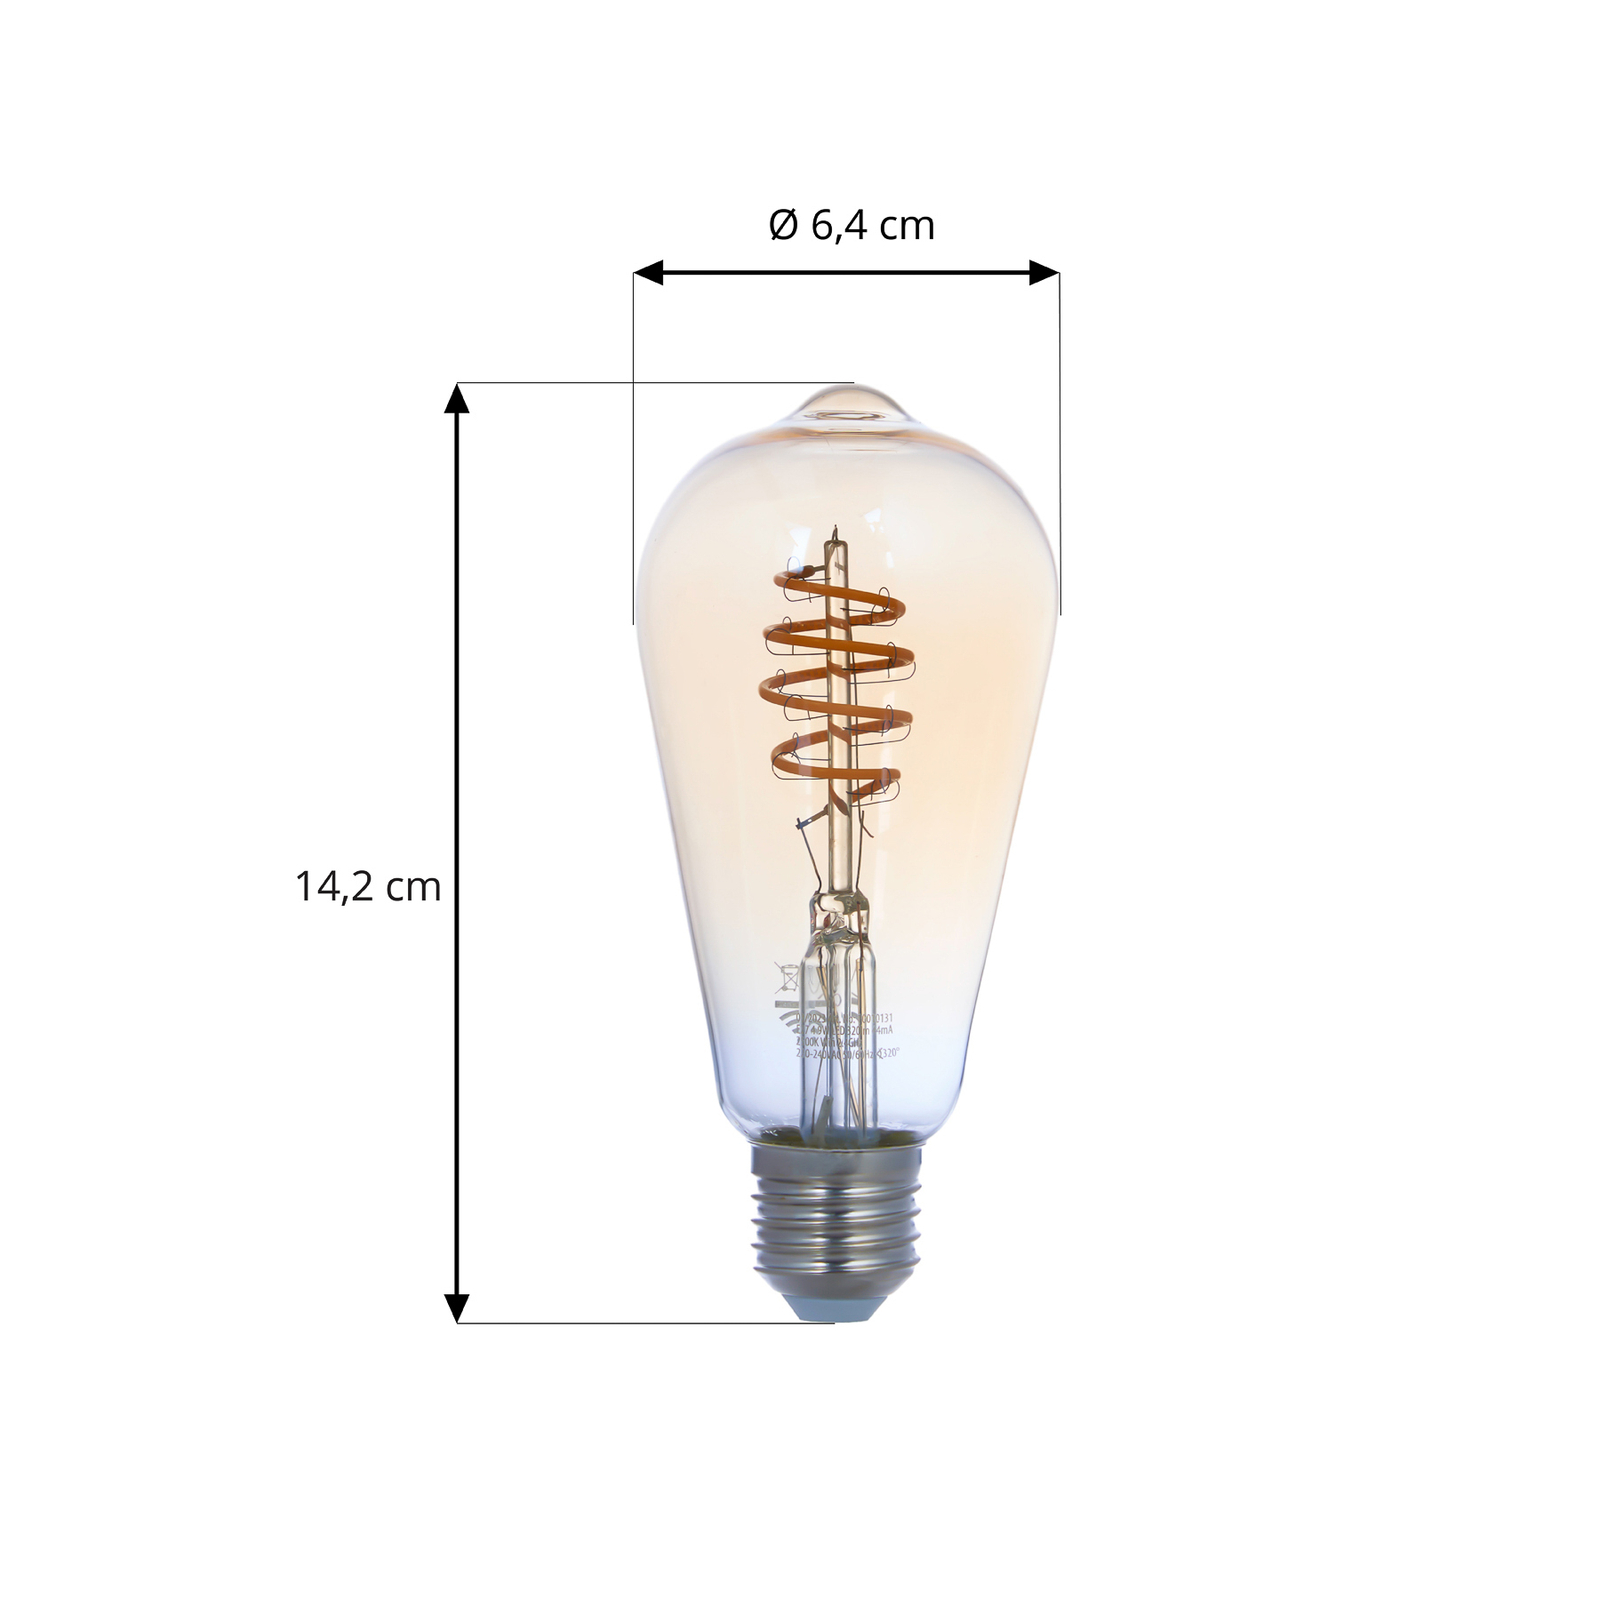 LUUMR Smart LED, 2 darabos készlet, E27, ST64, 4.9W, sárga, világos, Tuya